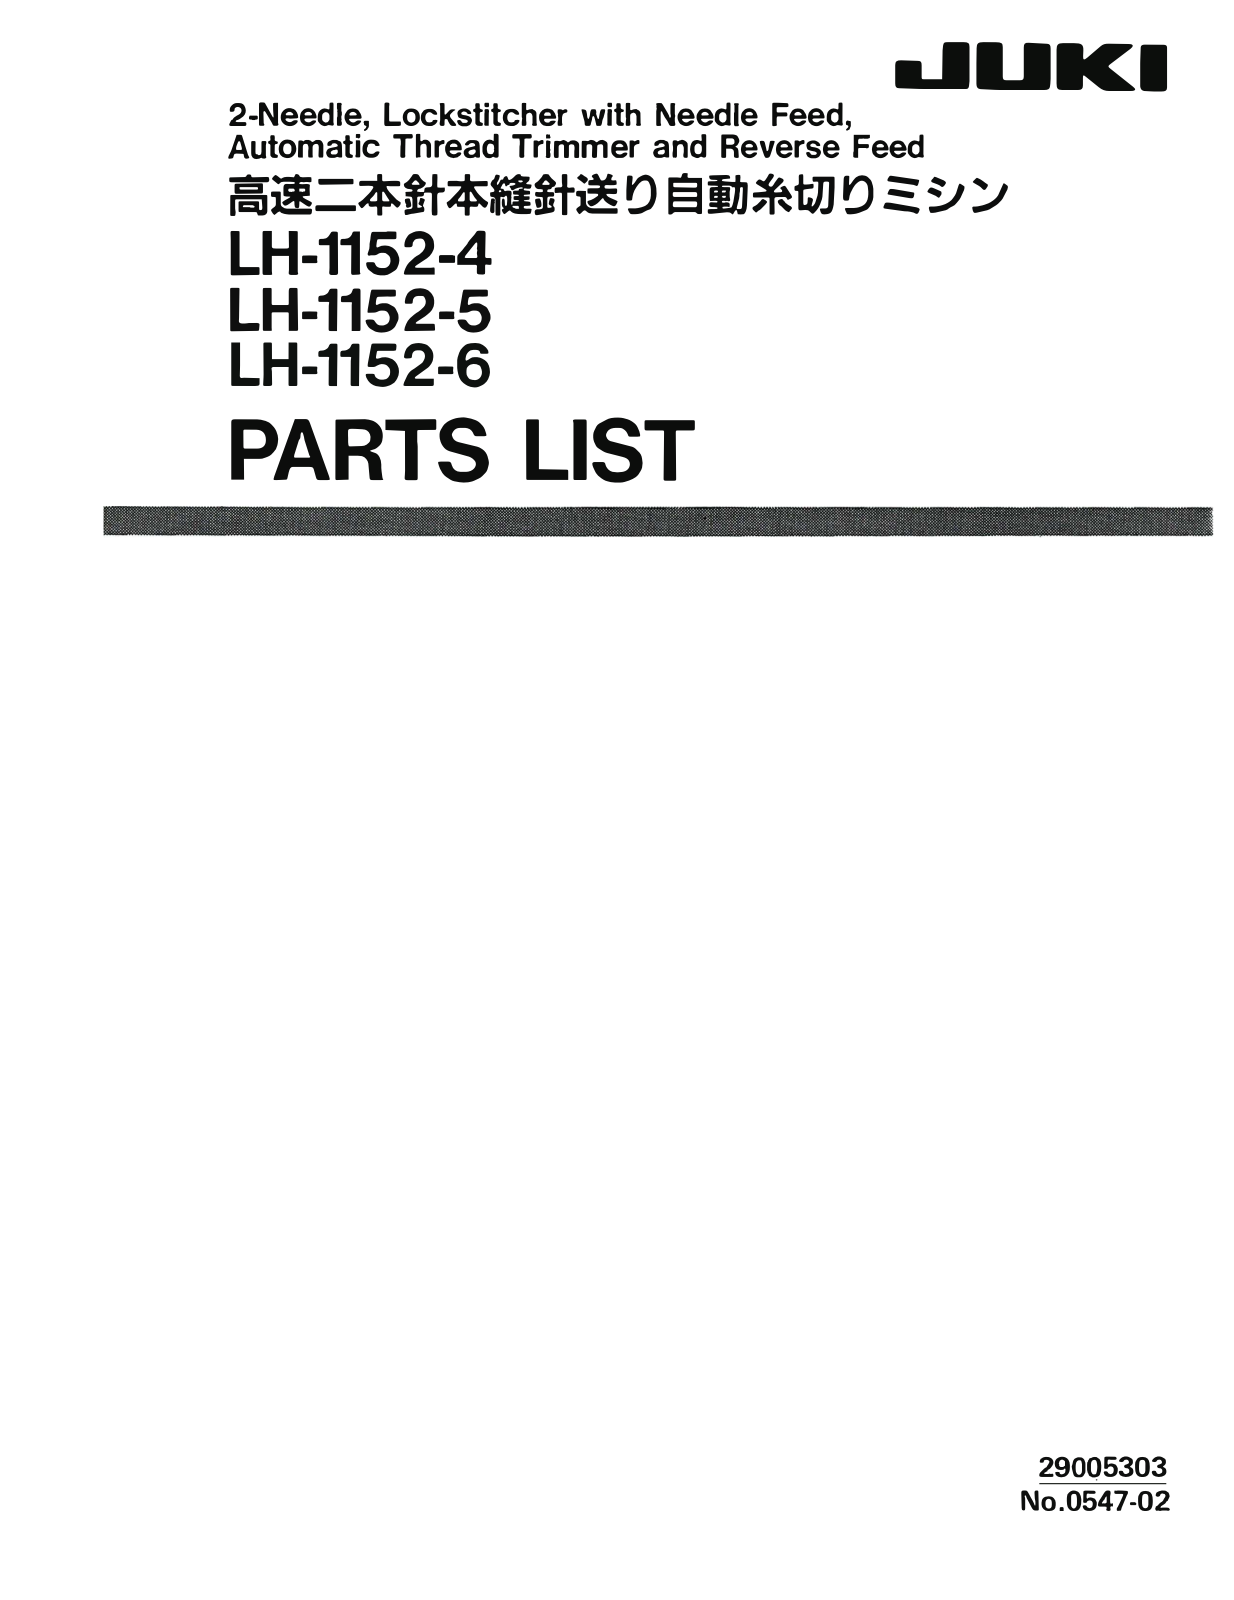 Juki LH-1152-4, LH-1152-5, LH-1152-6 Manual